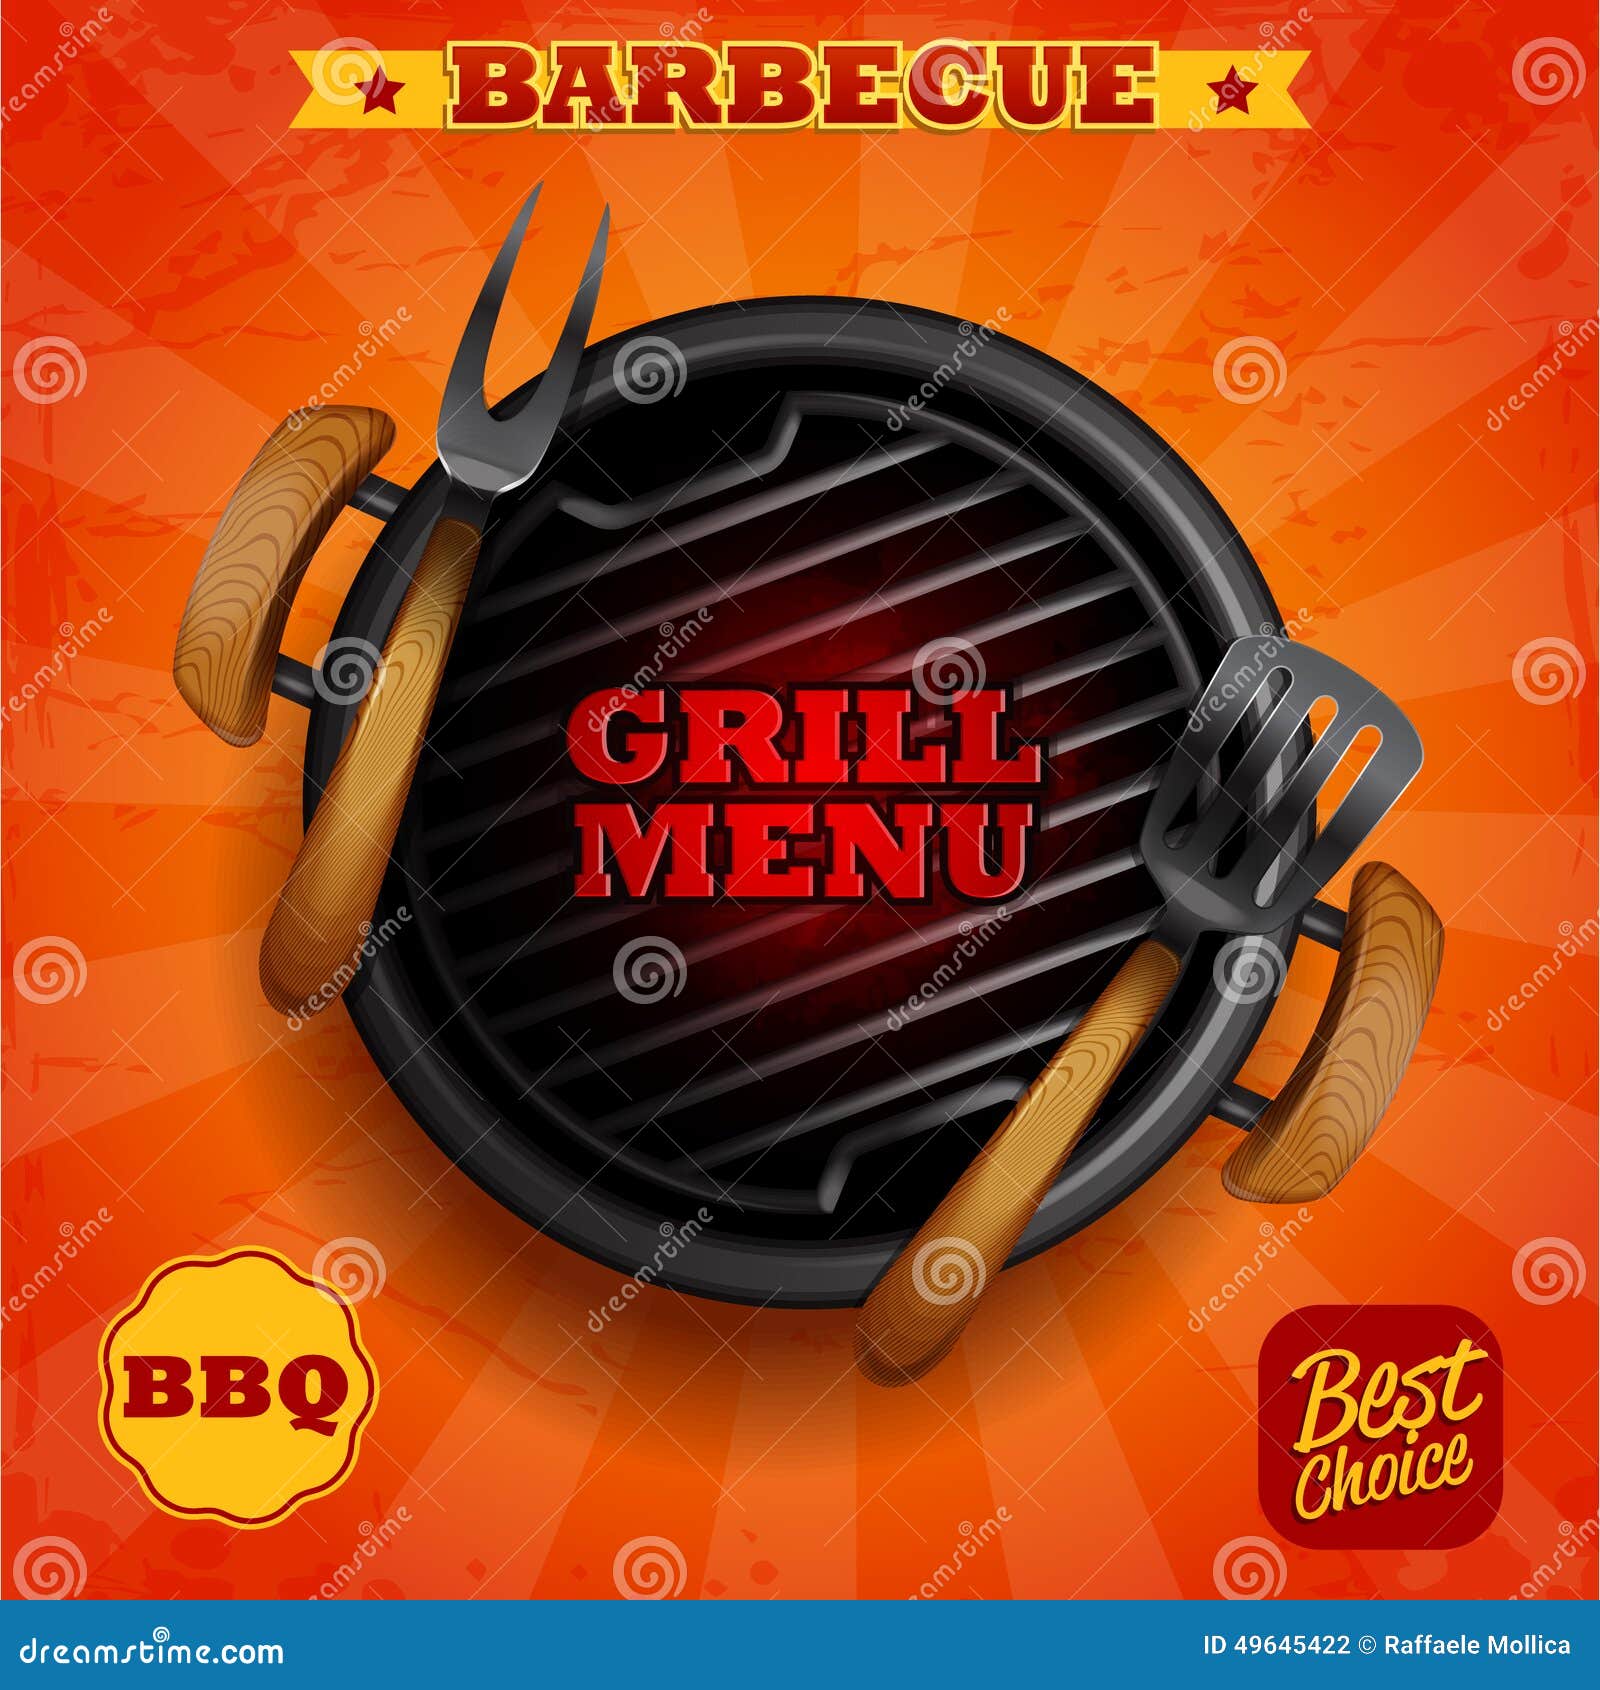 barbecue grill menu